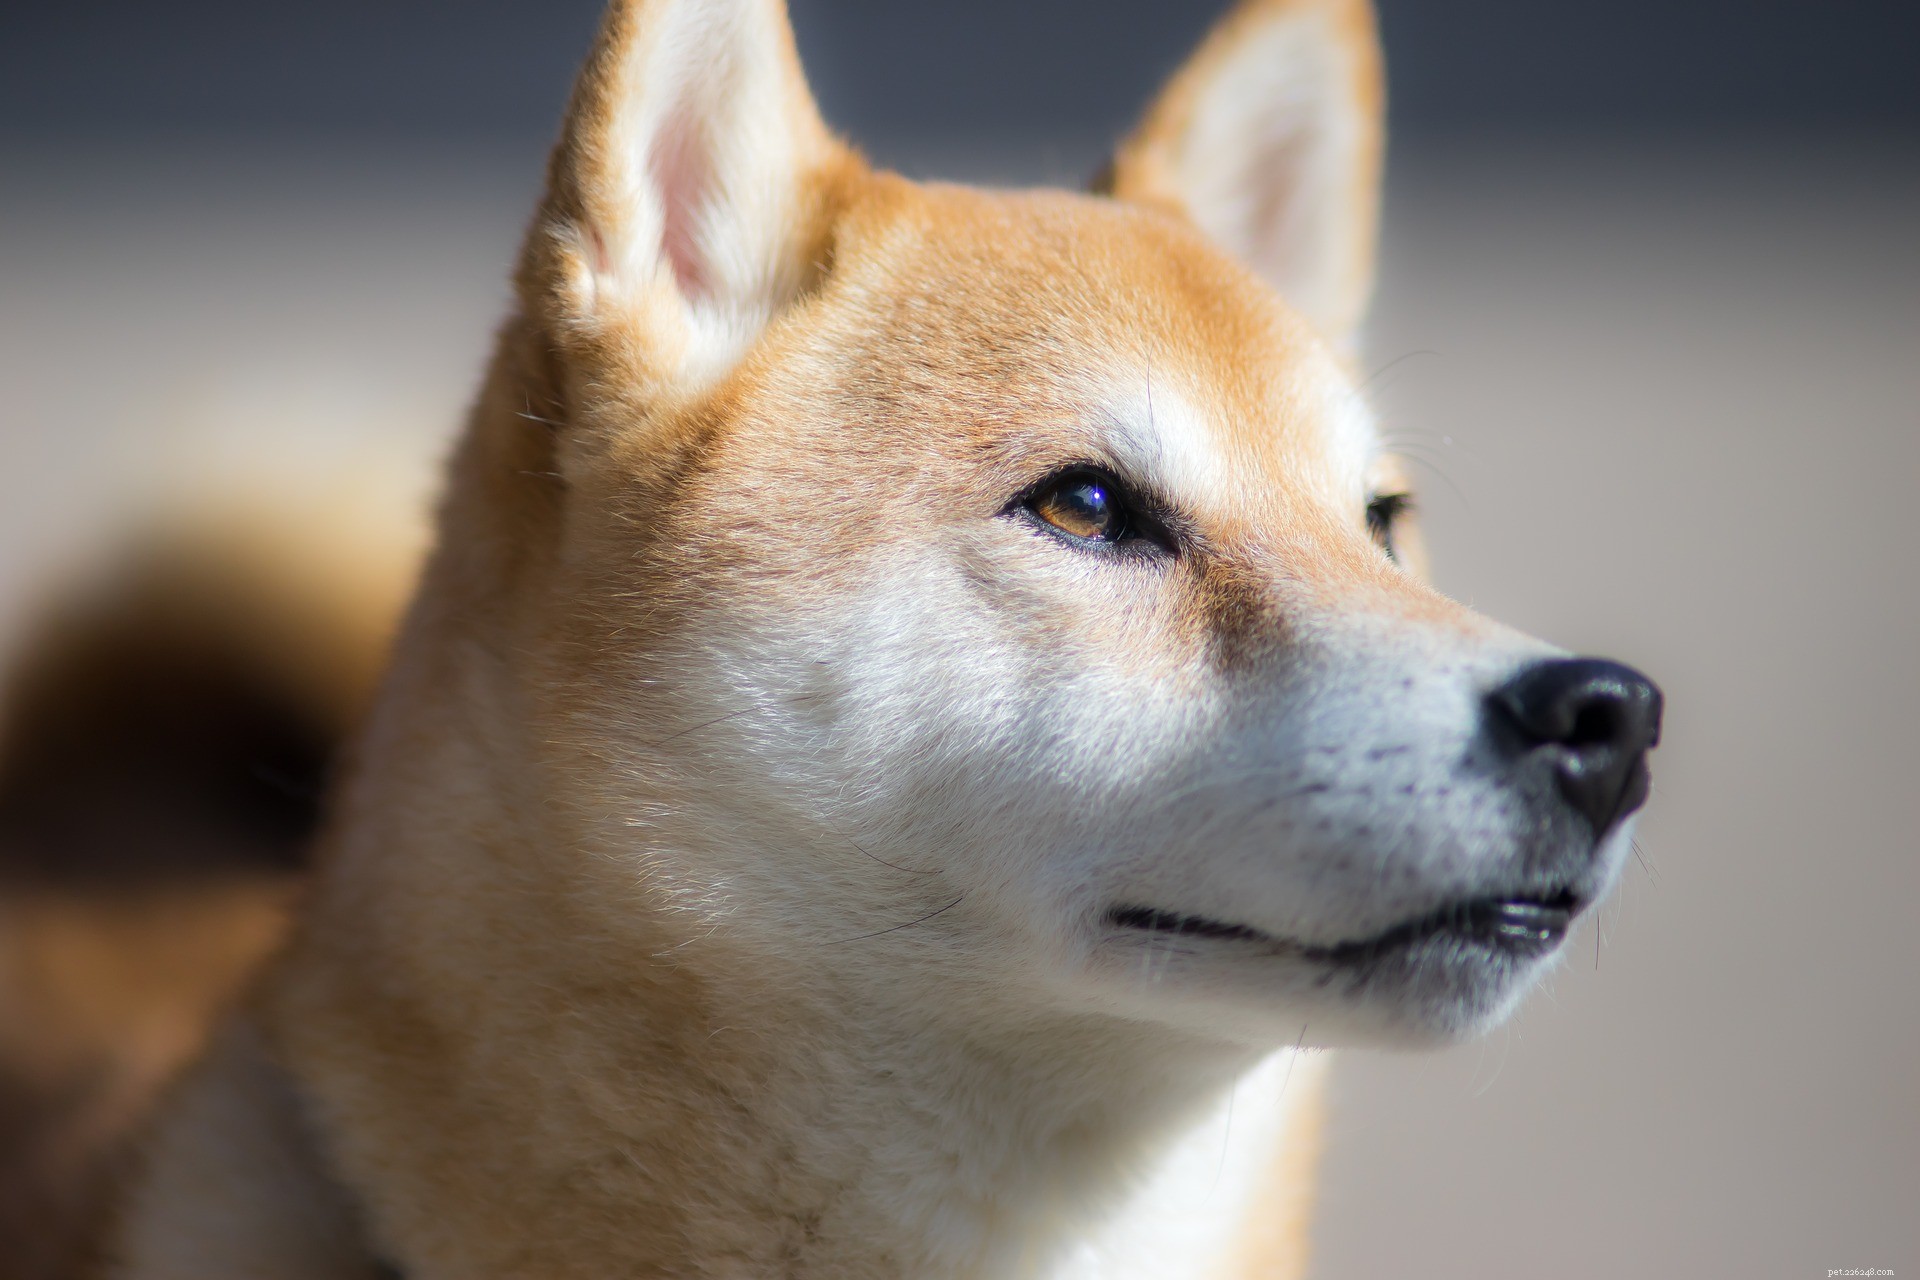 Is de shiba inu een goede huishond?